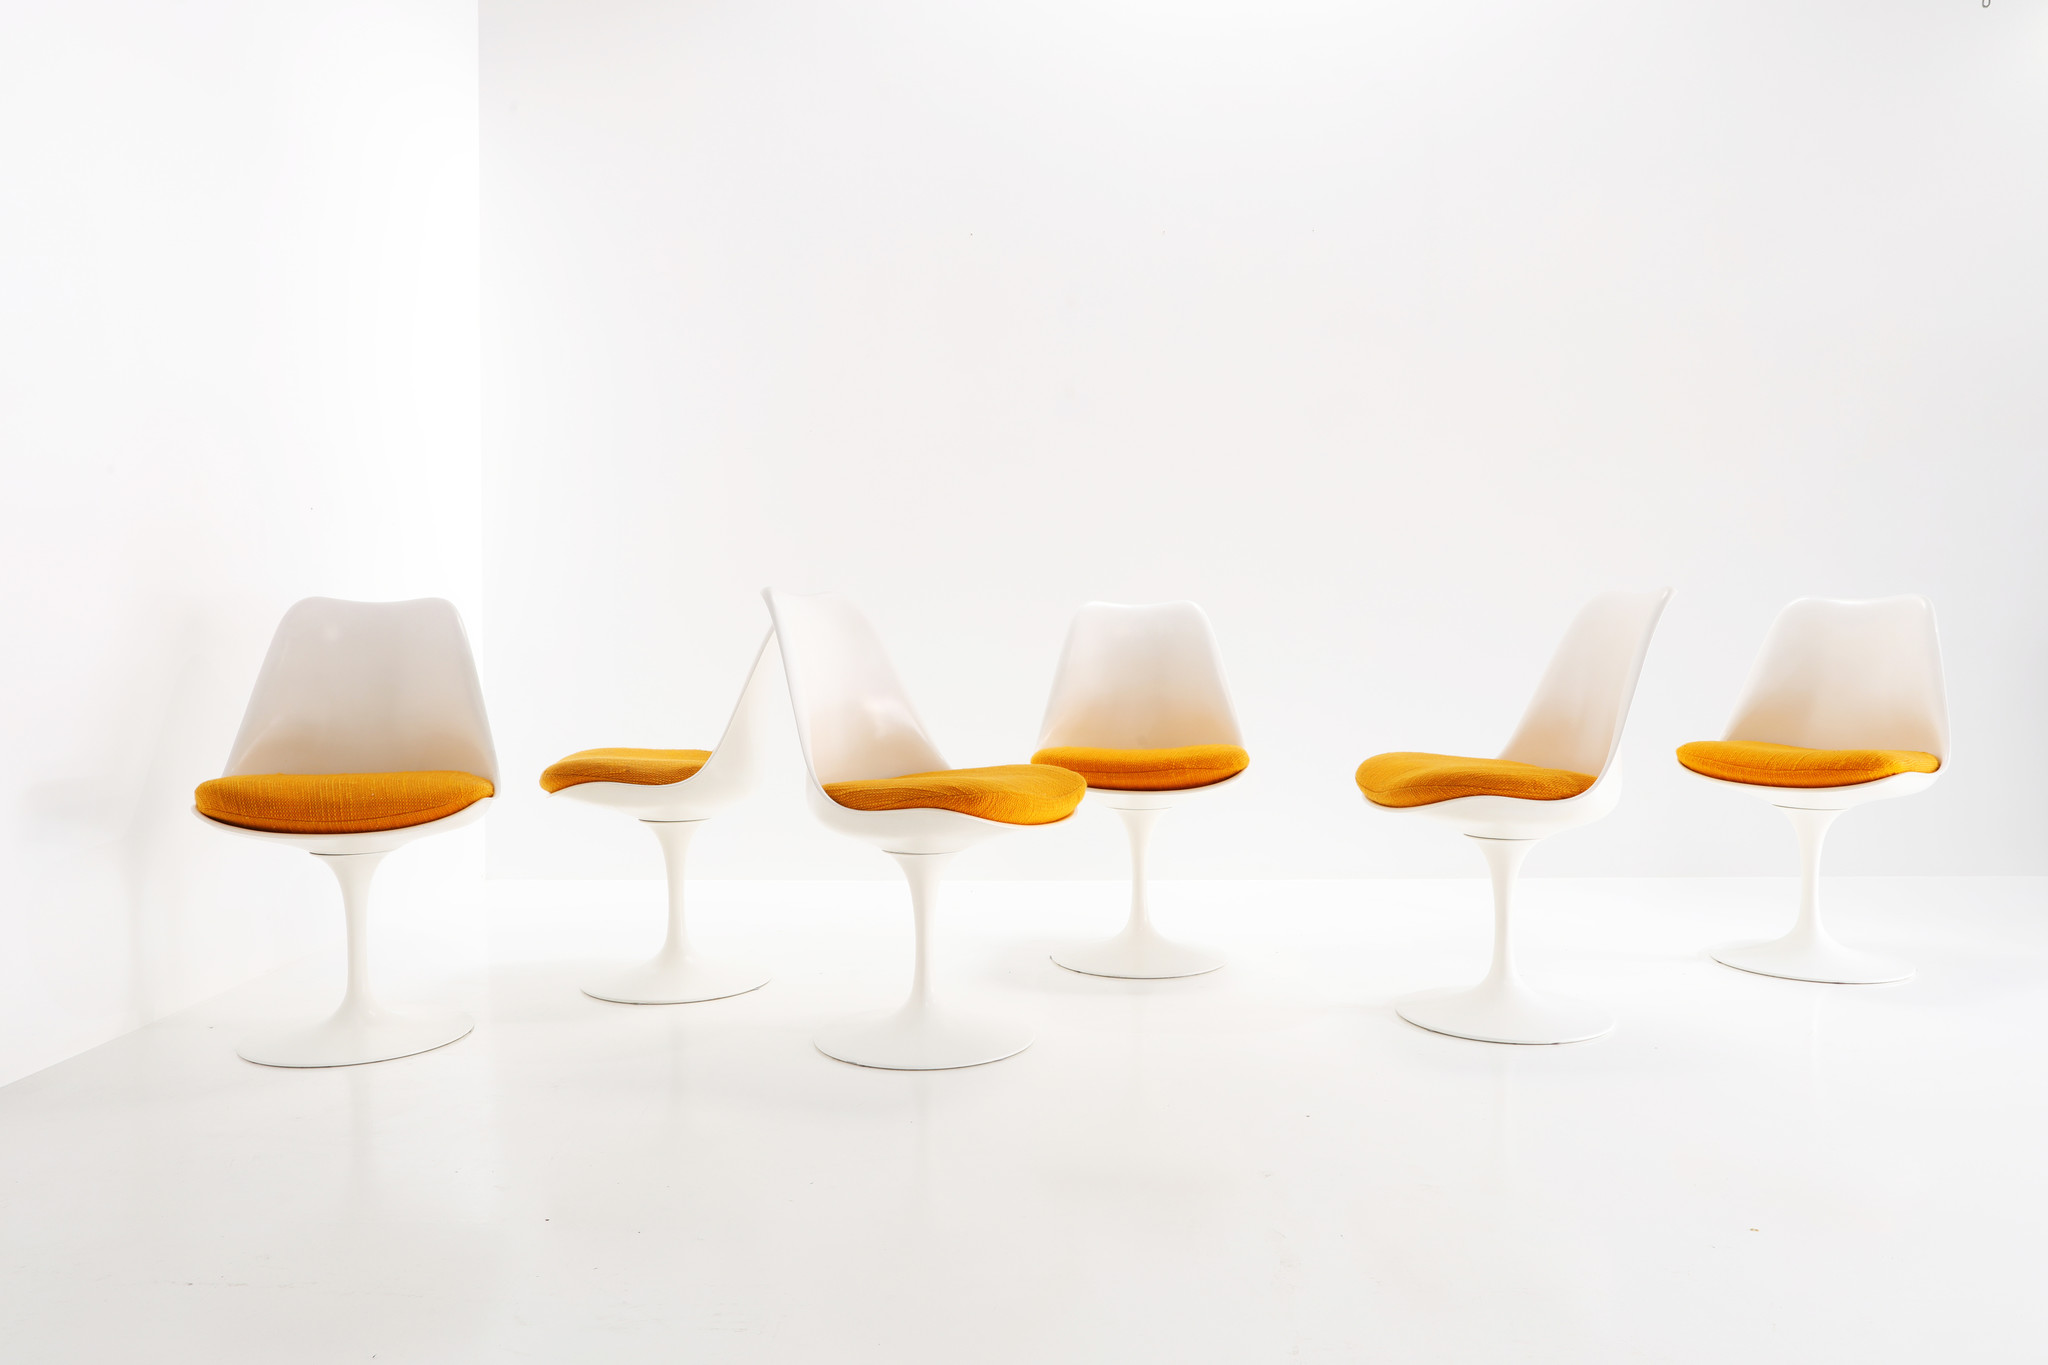 Vintage Knoll Tulip chairs designed by Eero Saarinen